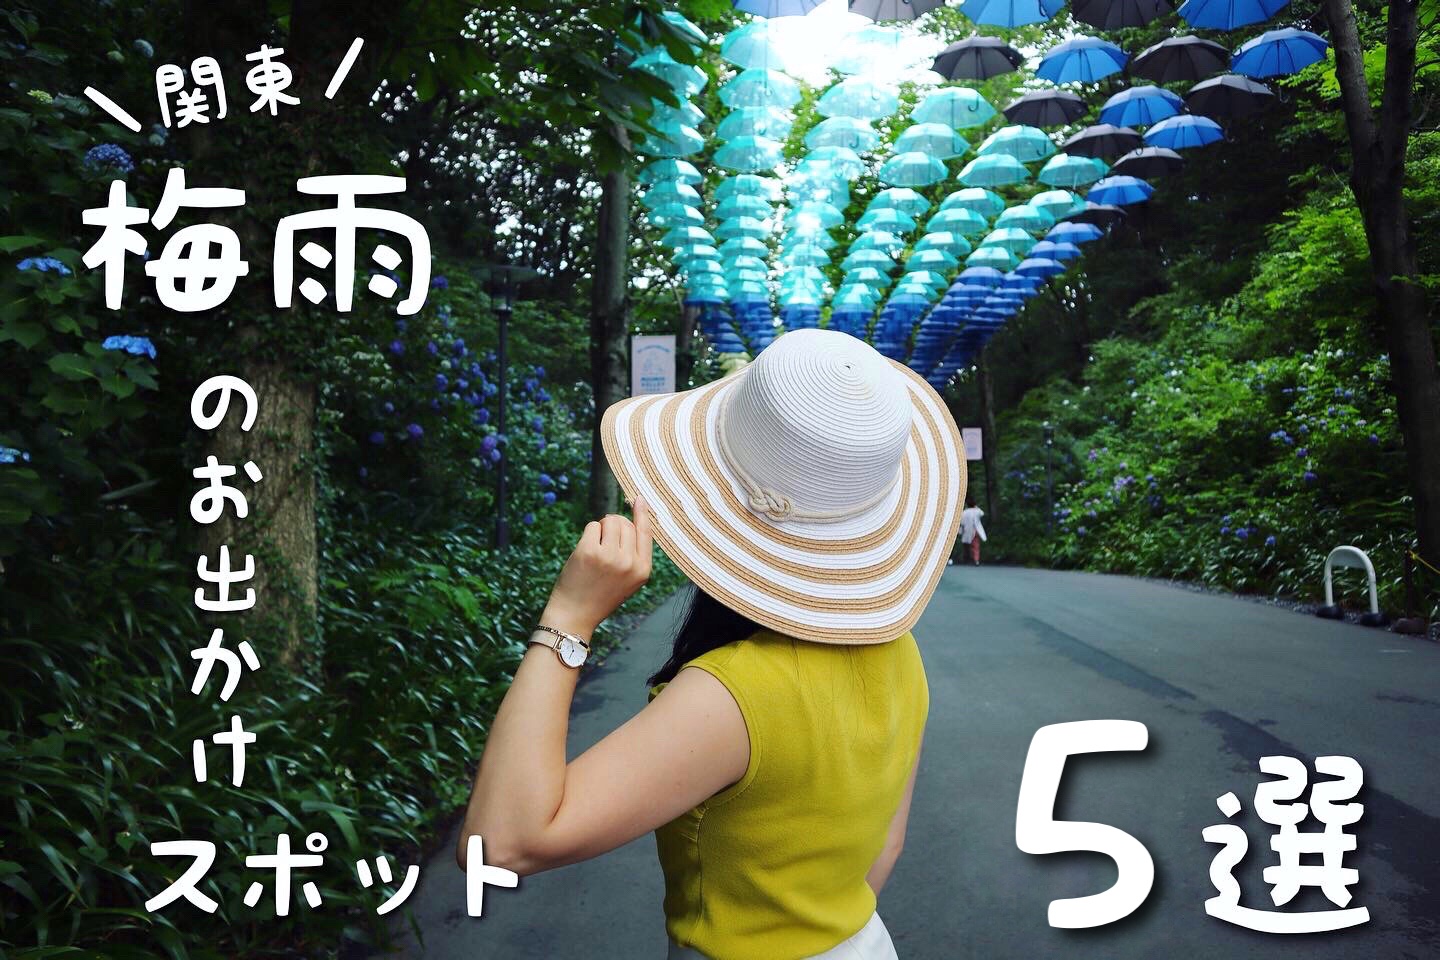 関東 フォトジェニックな梅雨の絶景 カメラ女子に勧める映え観光スポット5選 Travel Spot